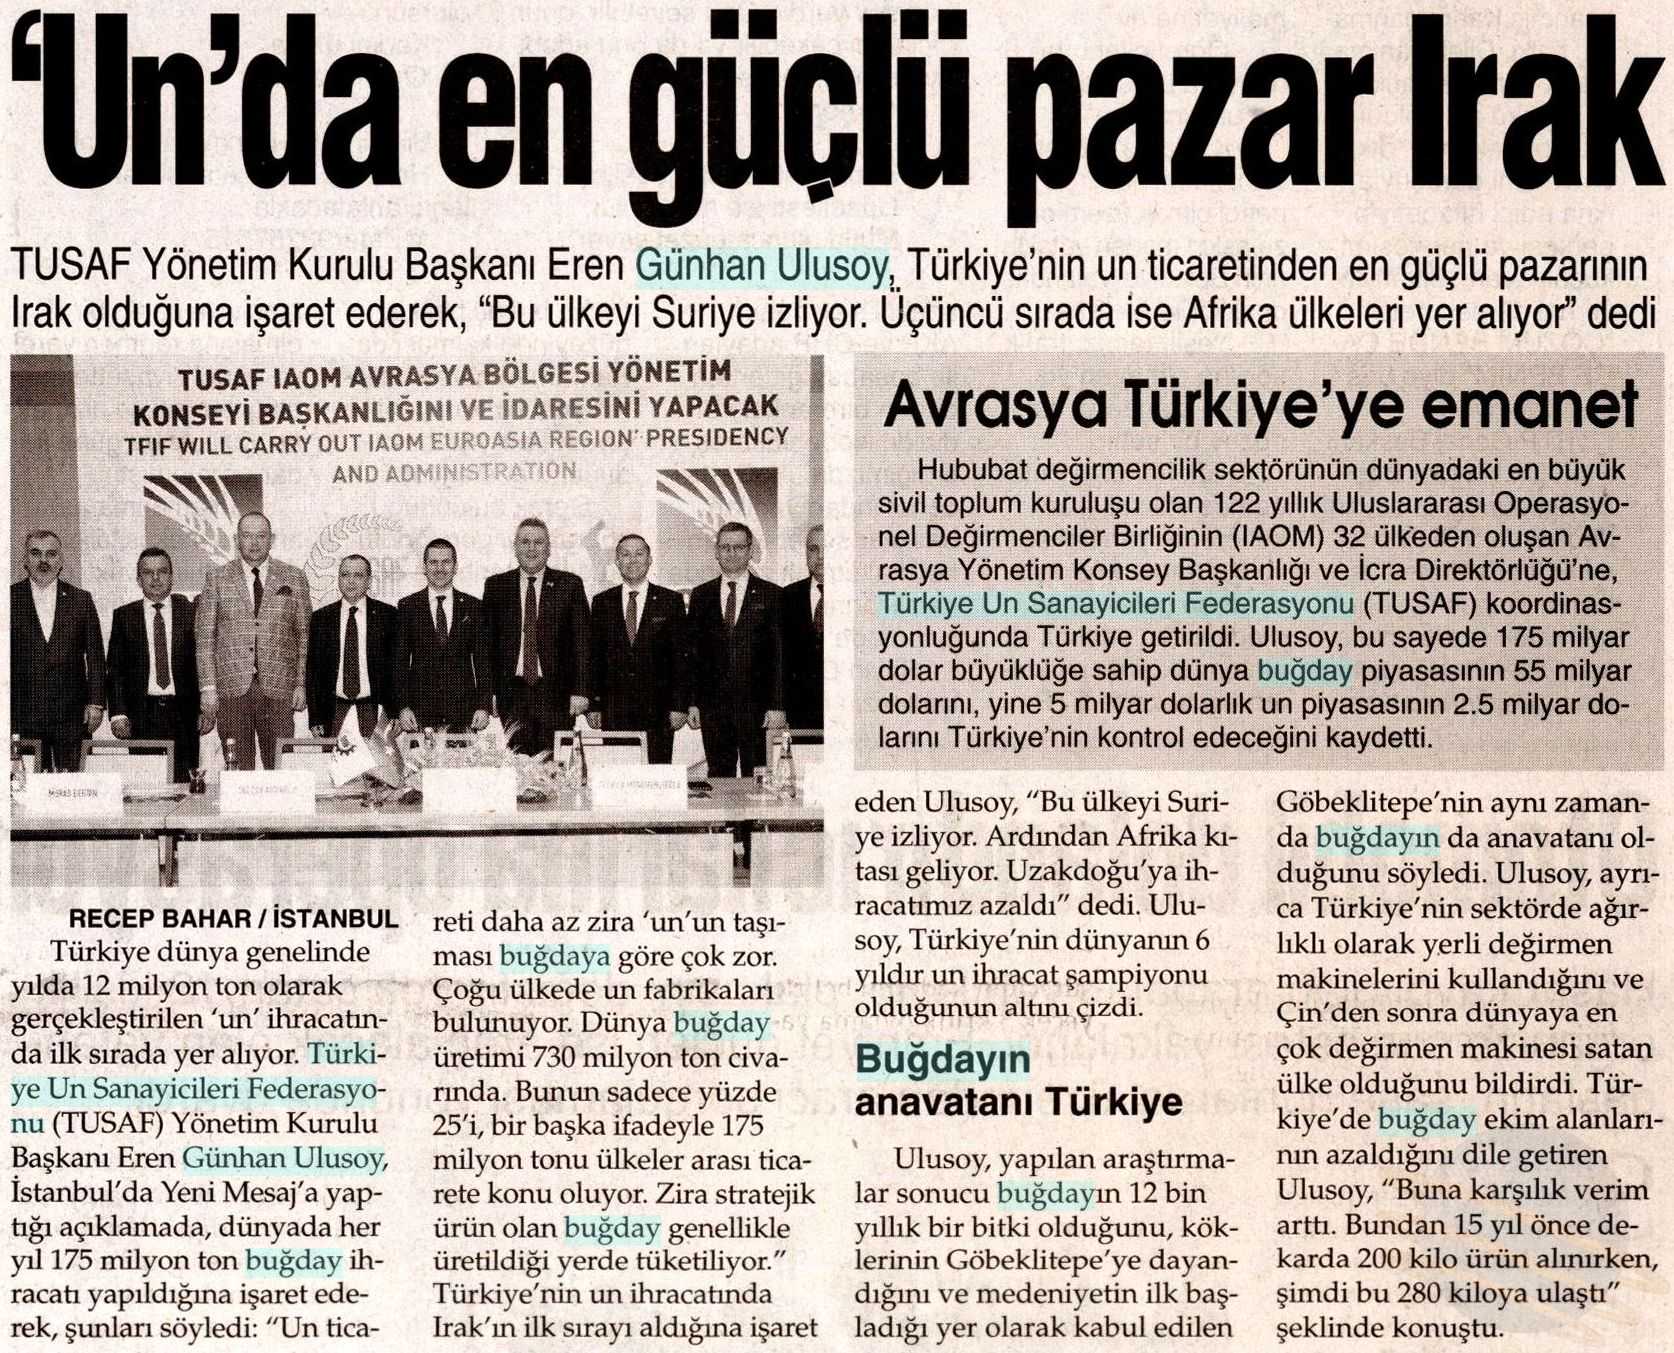 TUSAF Yeni Mesaj Gazetesi2.jpg